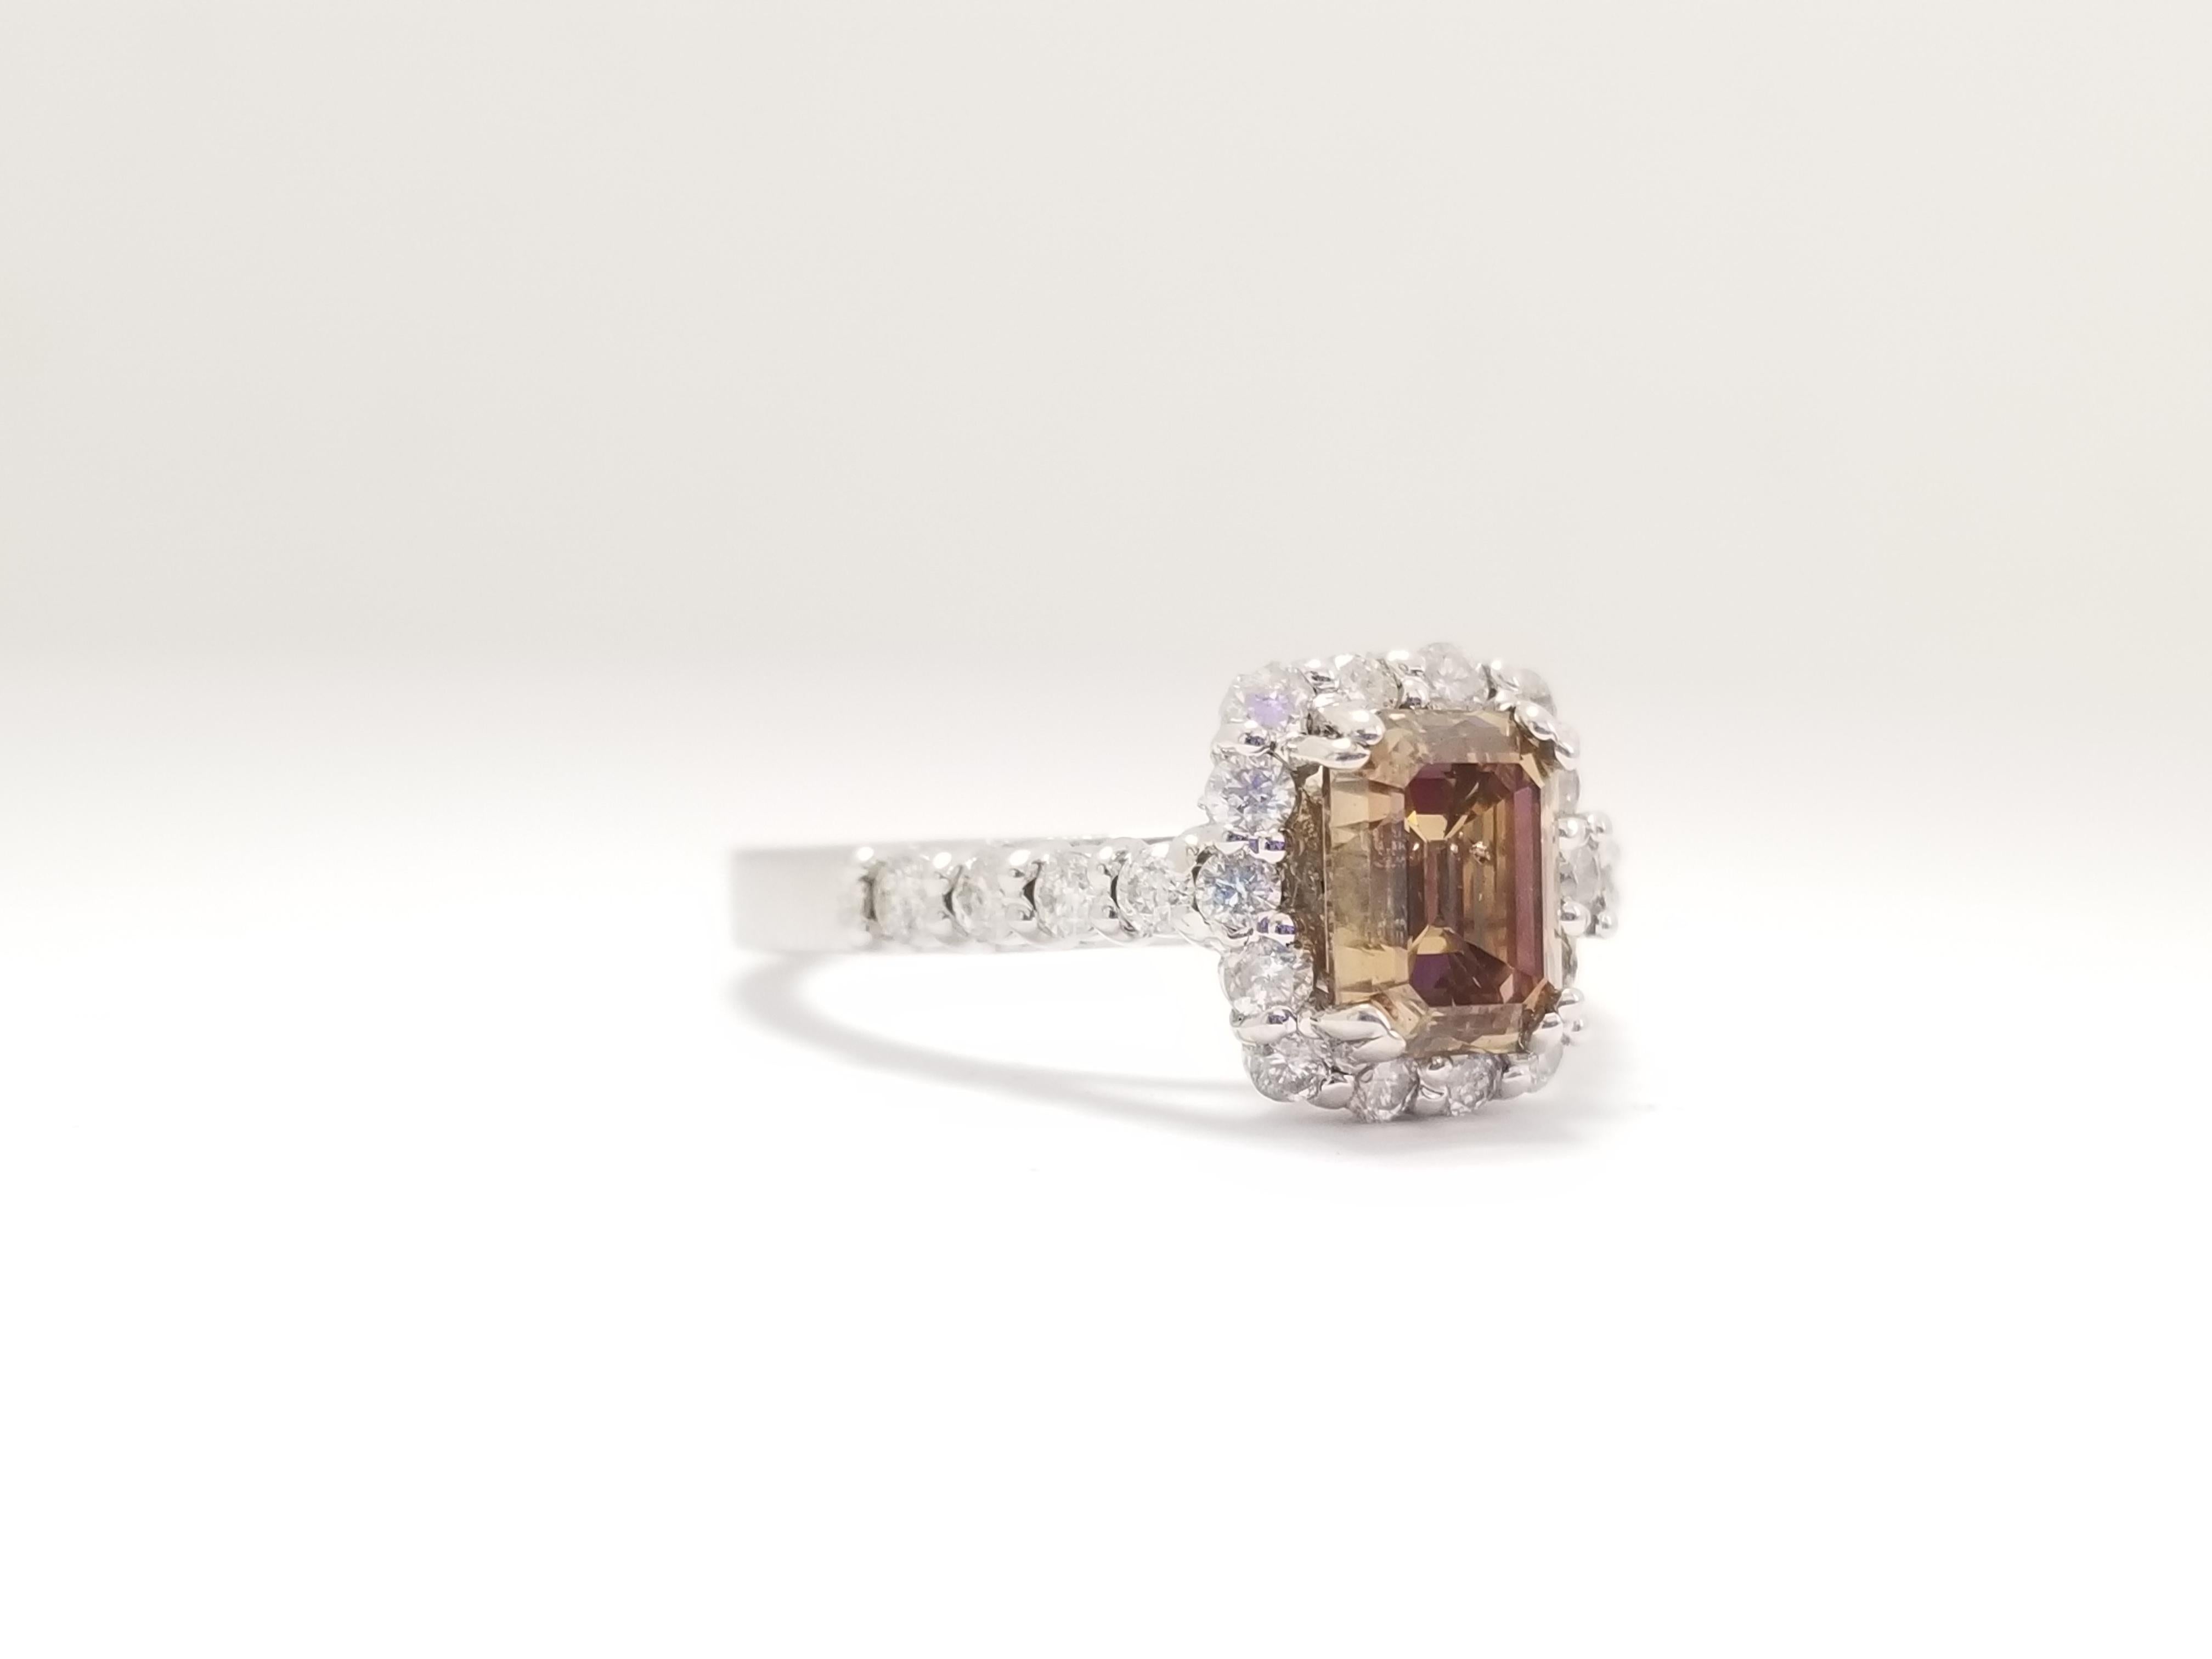 All Natural Fancy Yellow-Brown Emerald Cut Diamond Ring mit einem Gewicht von 1,33 Karat von GIA. Eleganz für jede Gelegenheit.
Ring Größe: 6.5